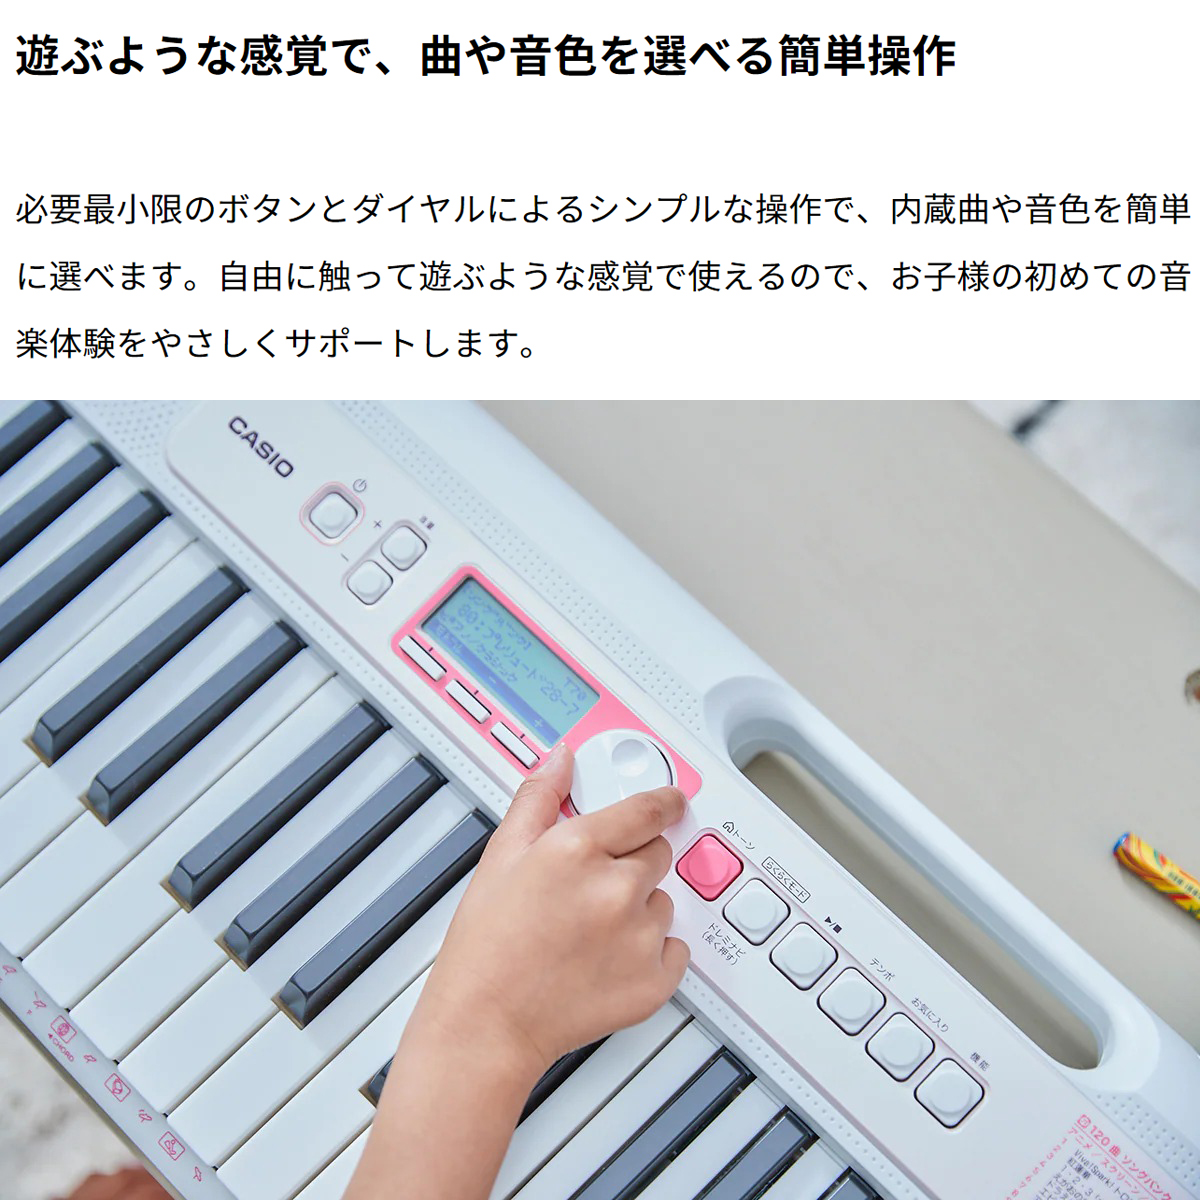 【ョンキーボ】 カシオ 光ナビゲーションキーボード LK-320 aUm18-m92501131582 ください